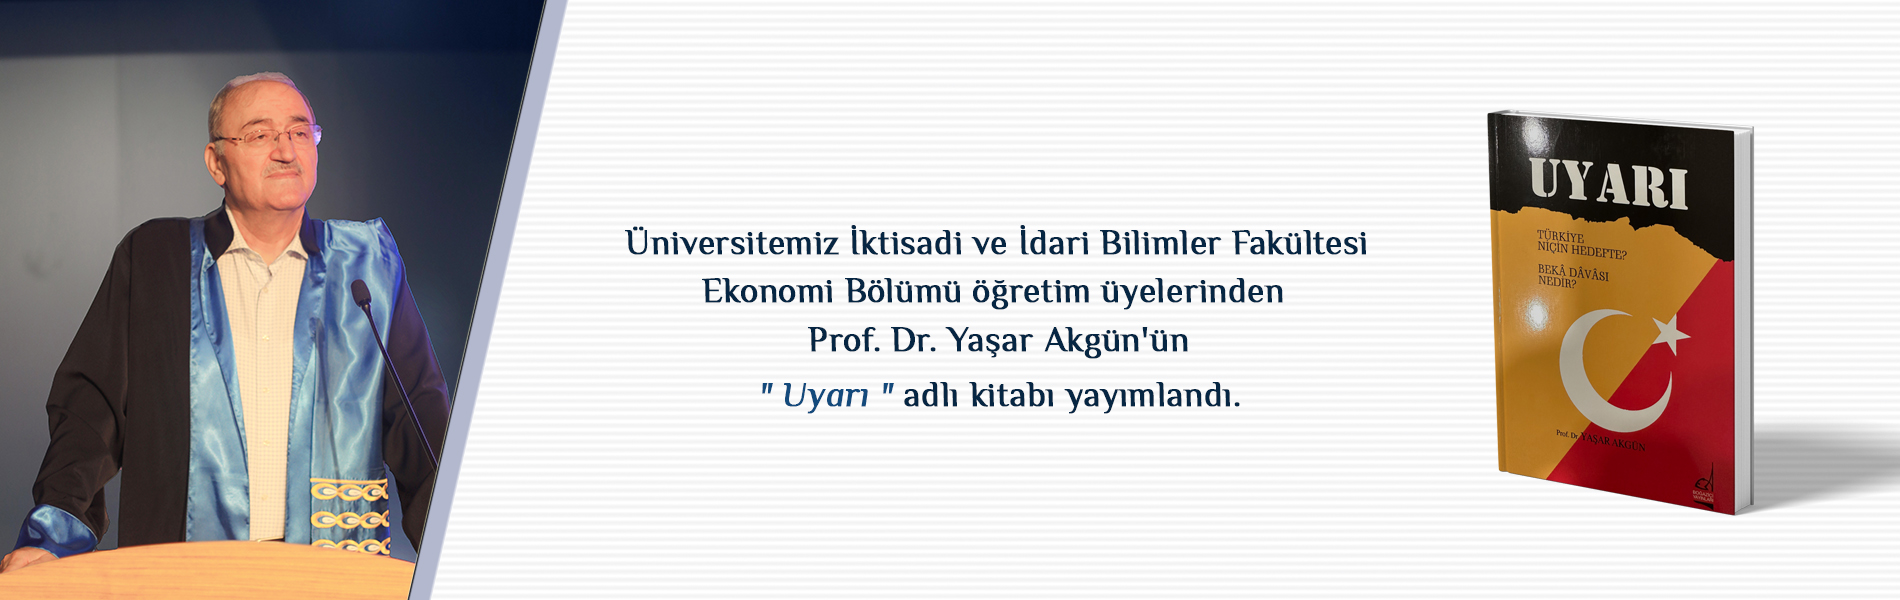 Üniversitemiz Ekonomi Bölümü Öğretim Üyelerinden Prof. Dr. Yaşar AKGÜN’ün “UYARI” Adlı Kitabı Yayımlandı